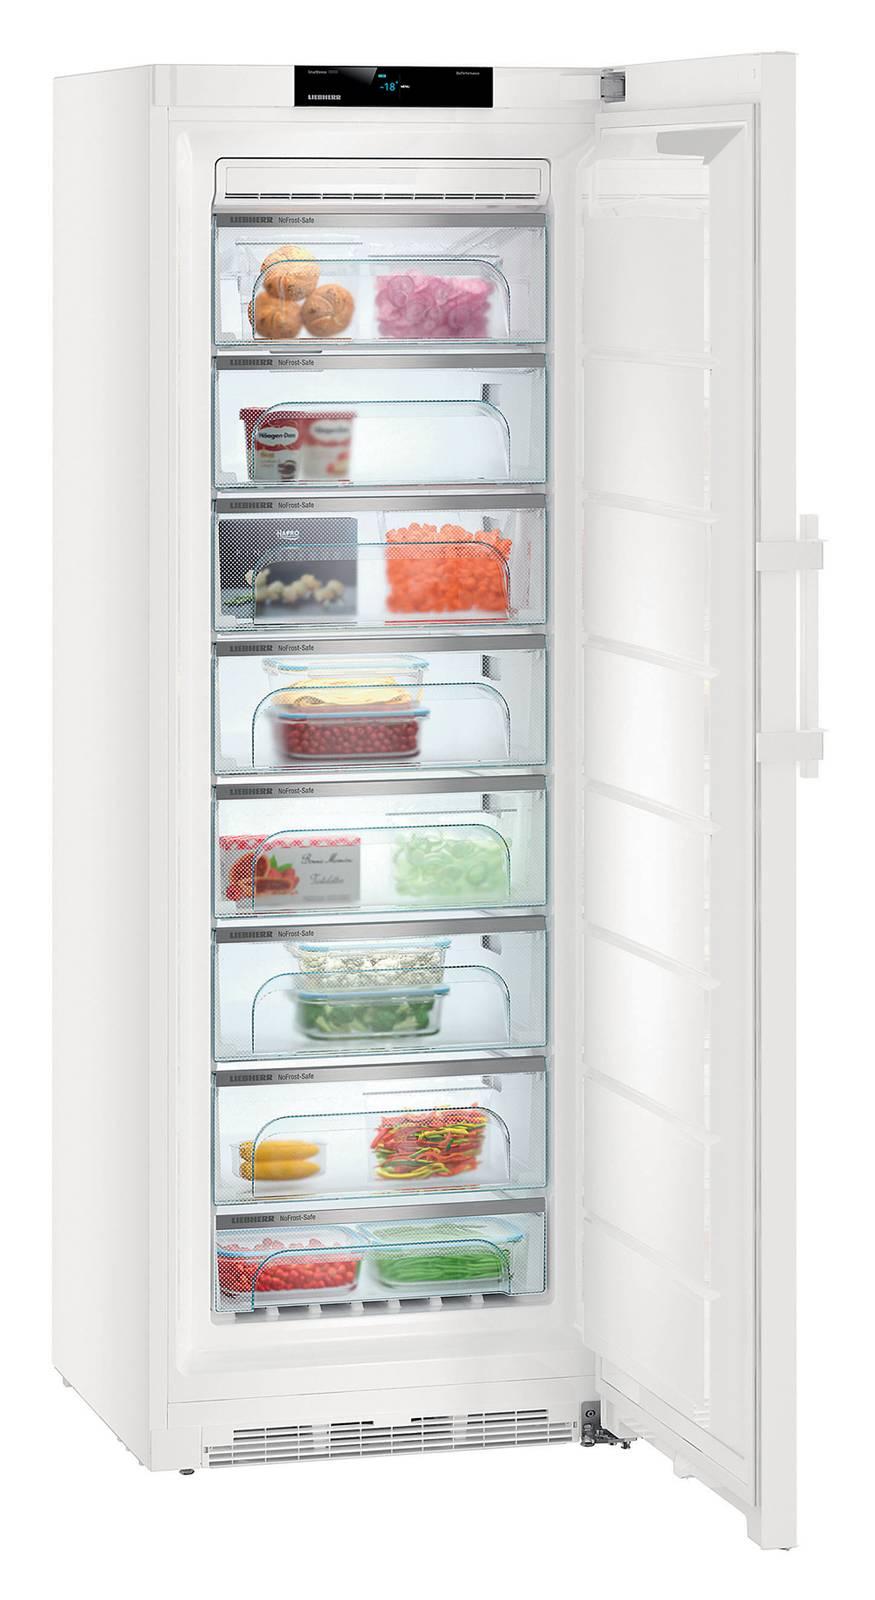 Qual è lumidità ideale per un congelatore ad incasso?